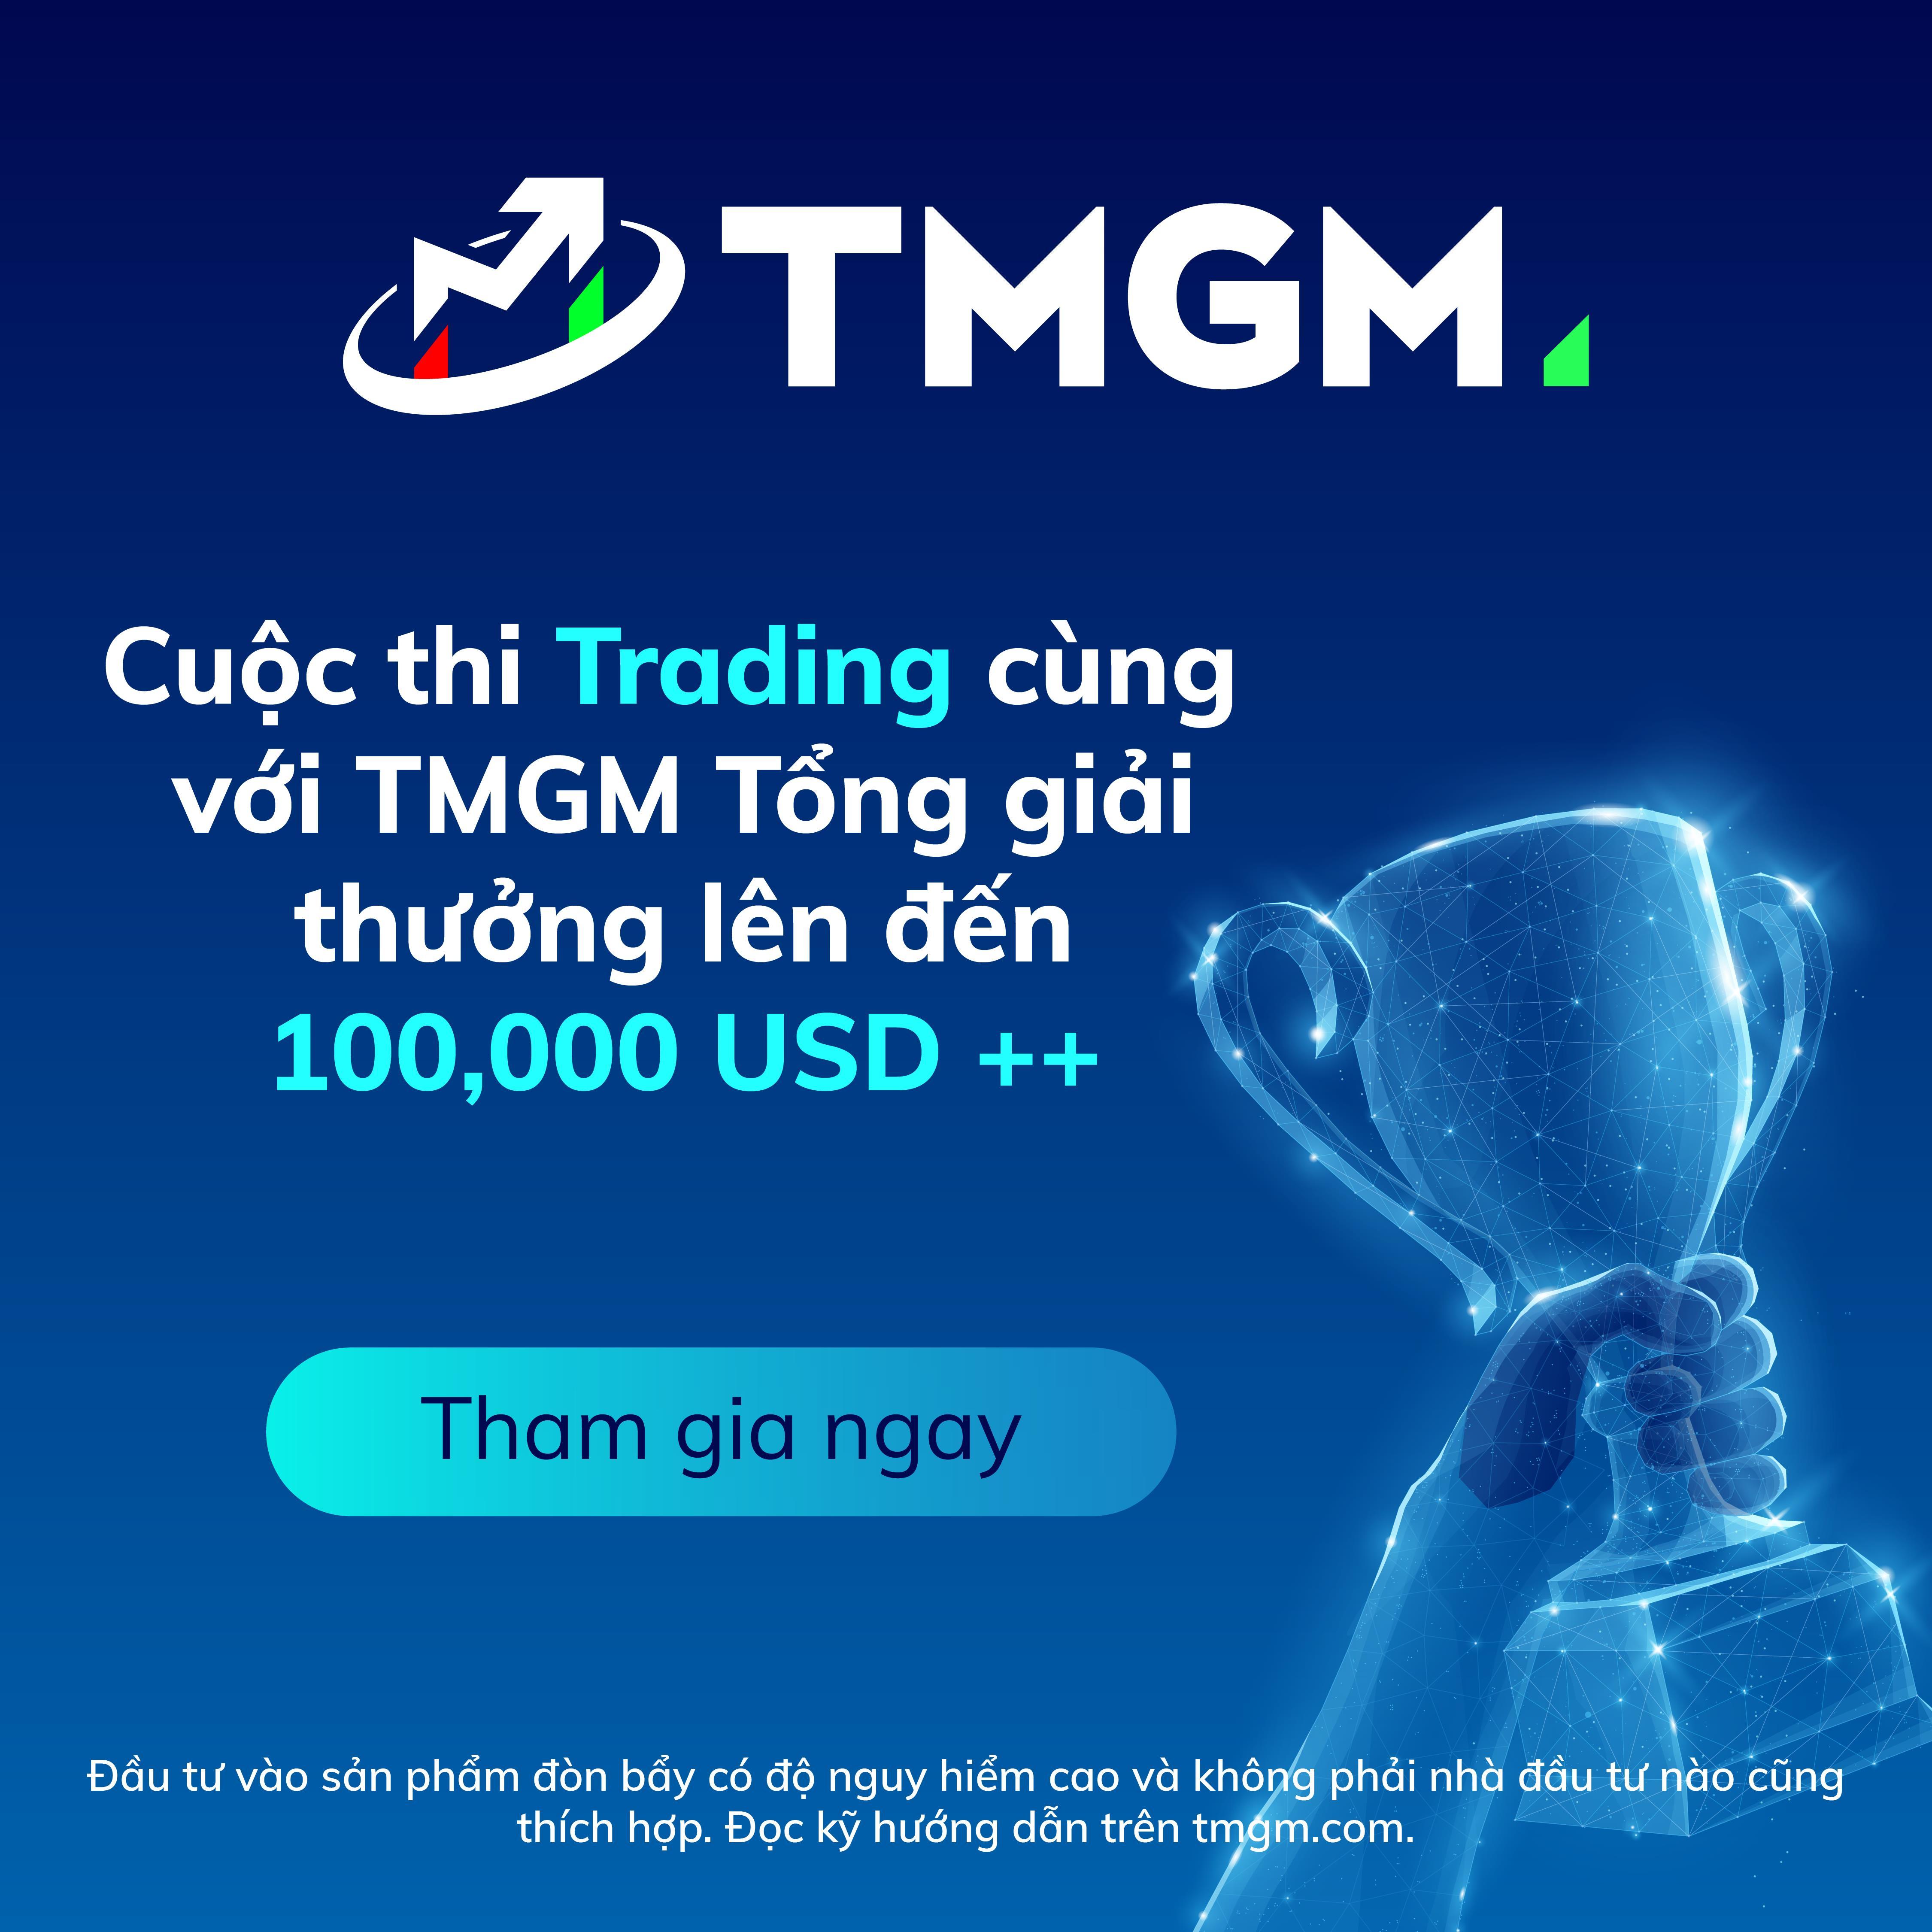 Cuộc thi Trading Toàn Cầu cùng với TMGM với tổng giá trị giải thưởng lên đến 100.000 USD